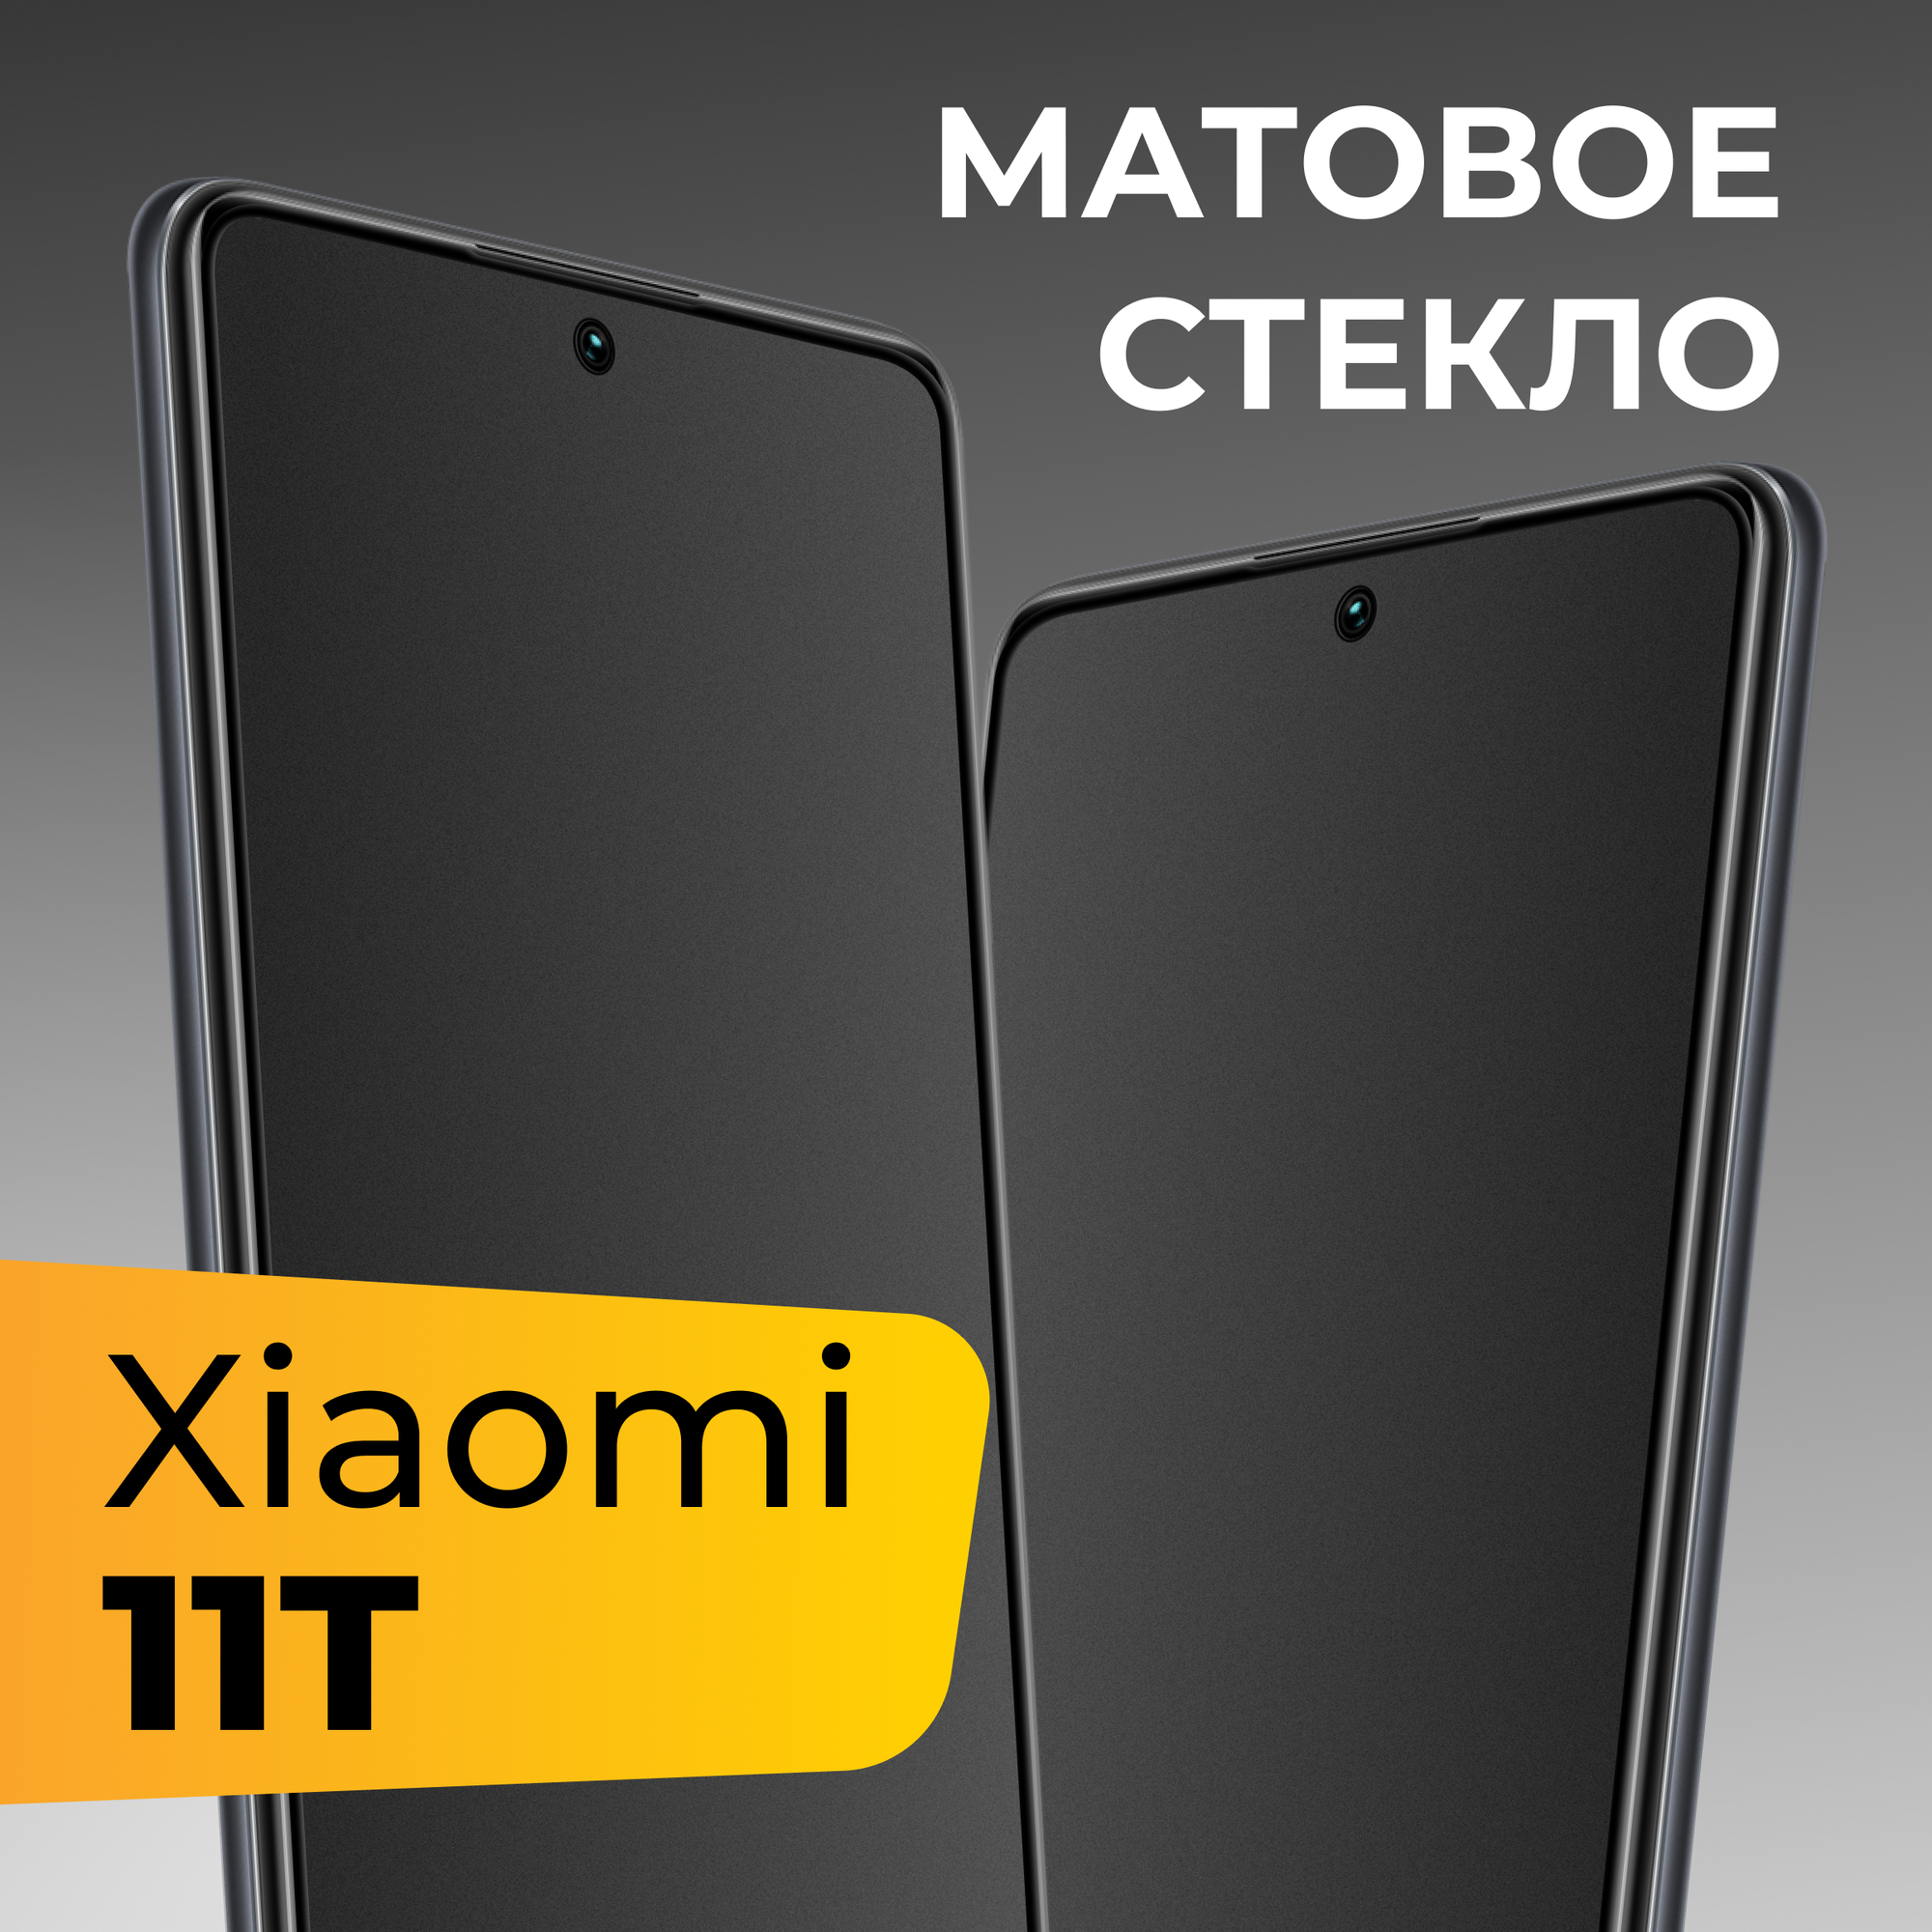 Матовое защитное стекло для телефона Xiaomi 11T / Противоударное закаленное стекло с олеофобным покрытием на весь экран для смартфона Сяоми 11Т